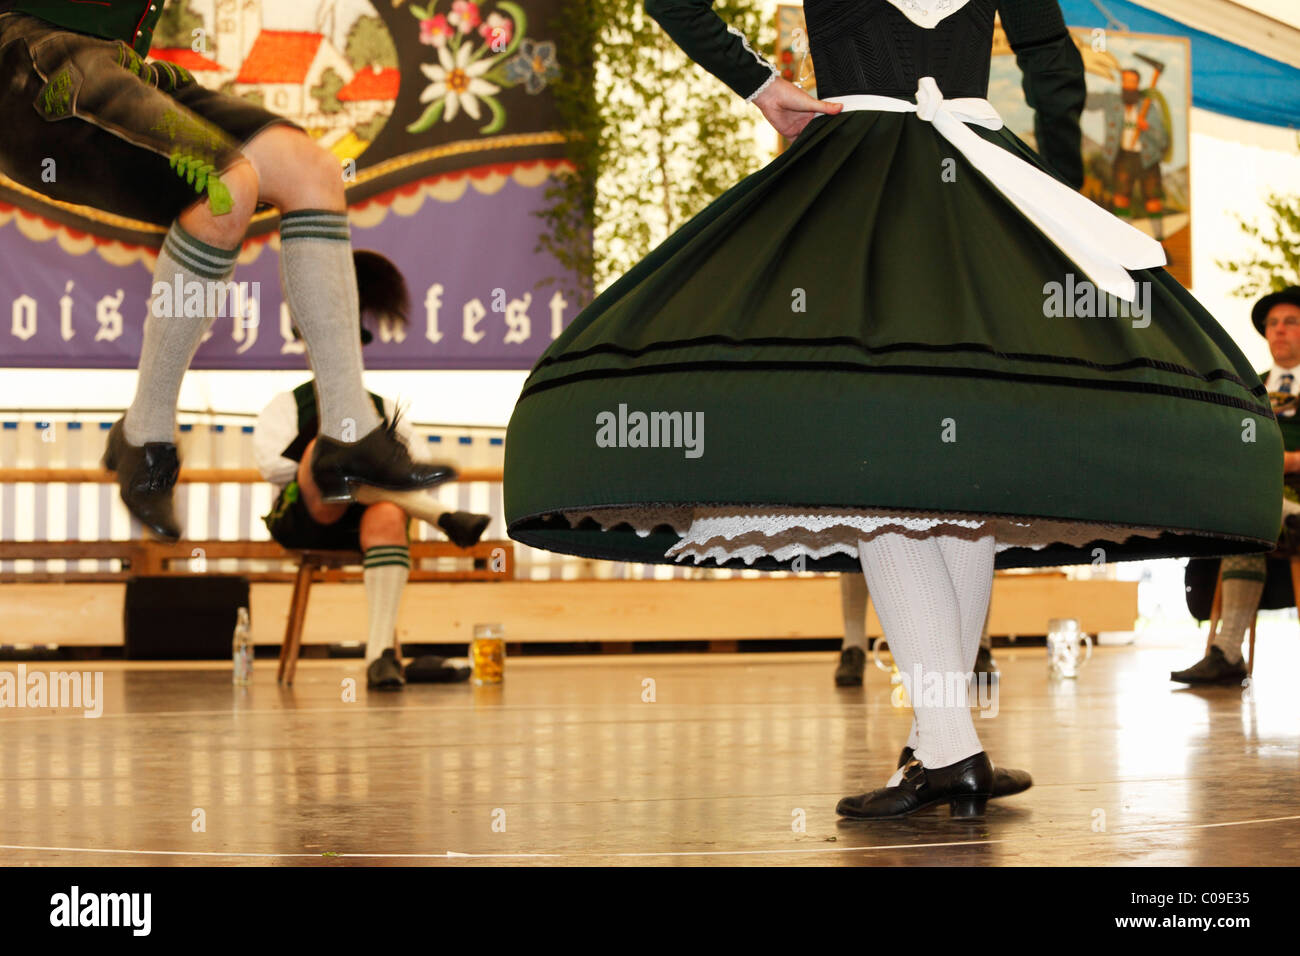 Schuhplattler danse folklorique, traditionnelle, 83e Loisachgaufest à Neufahrn, près de Egling, Haute-Bavière, Bavaria, Germany, Europe Banque D'Images